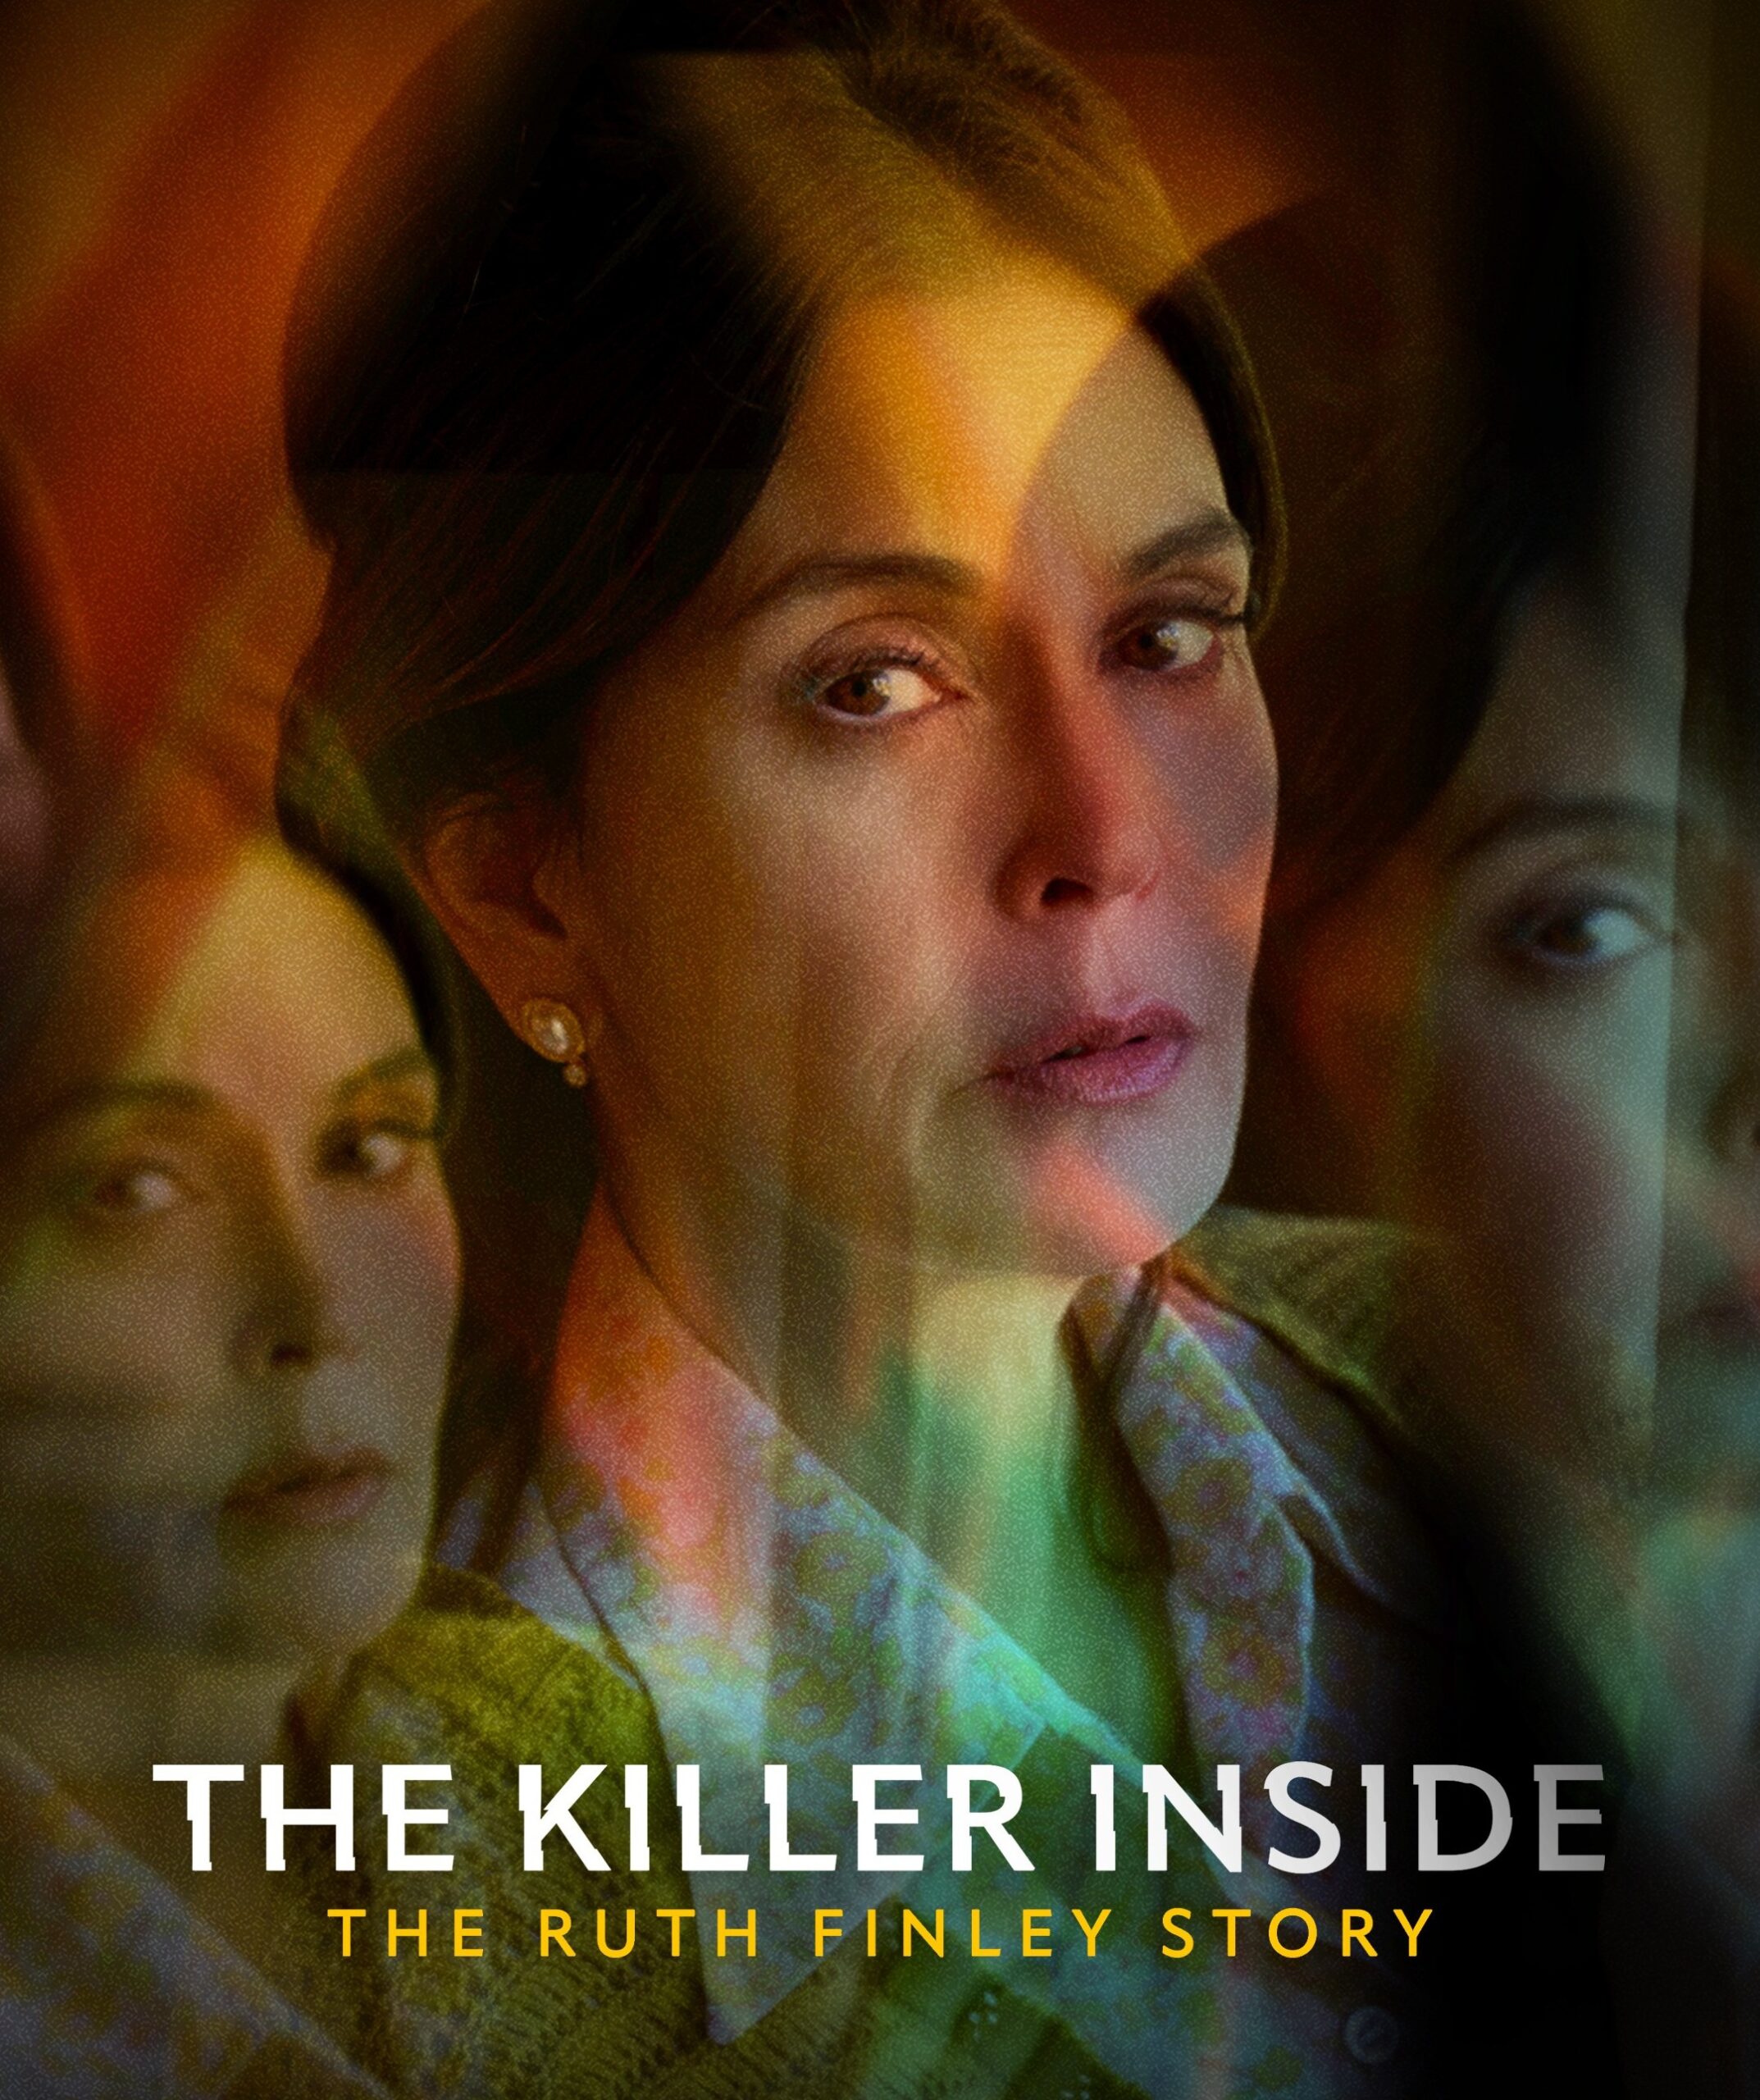 Key art for "The Killer Inside: The Ruth Finley Story" on Lifetime